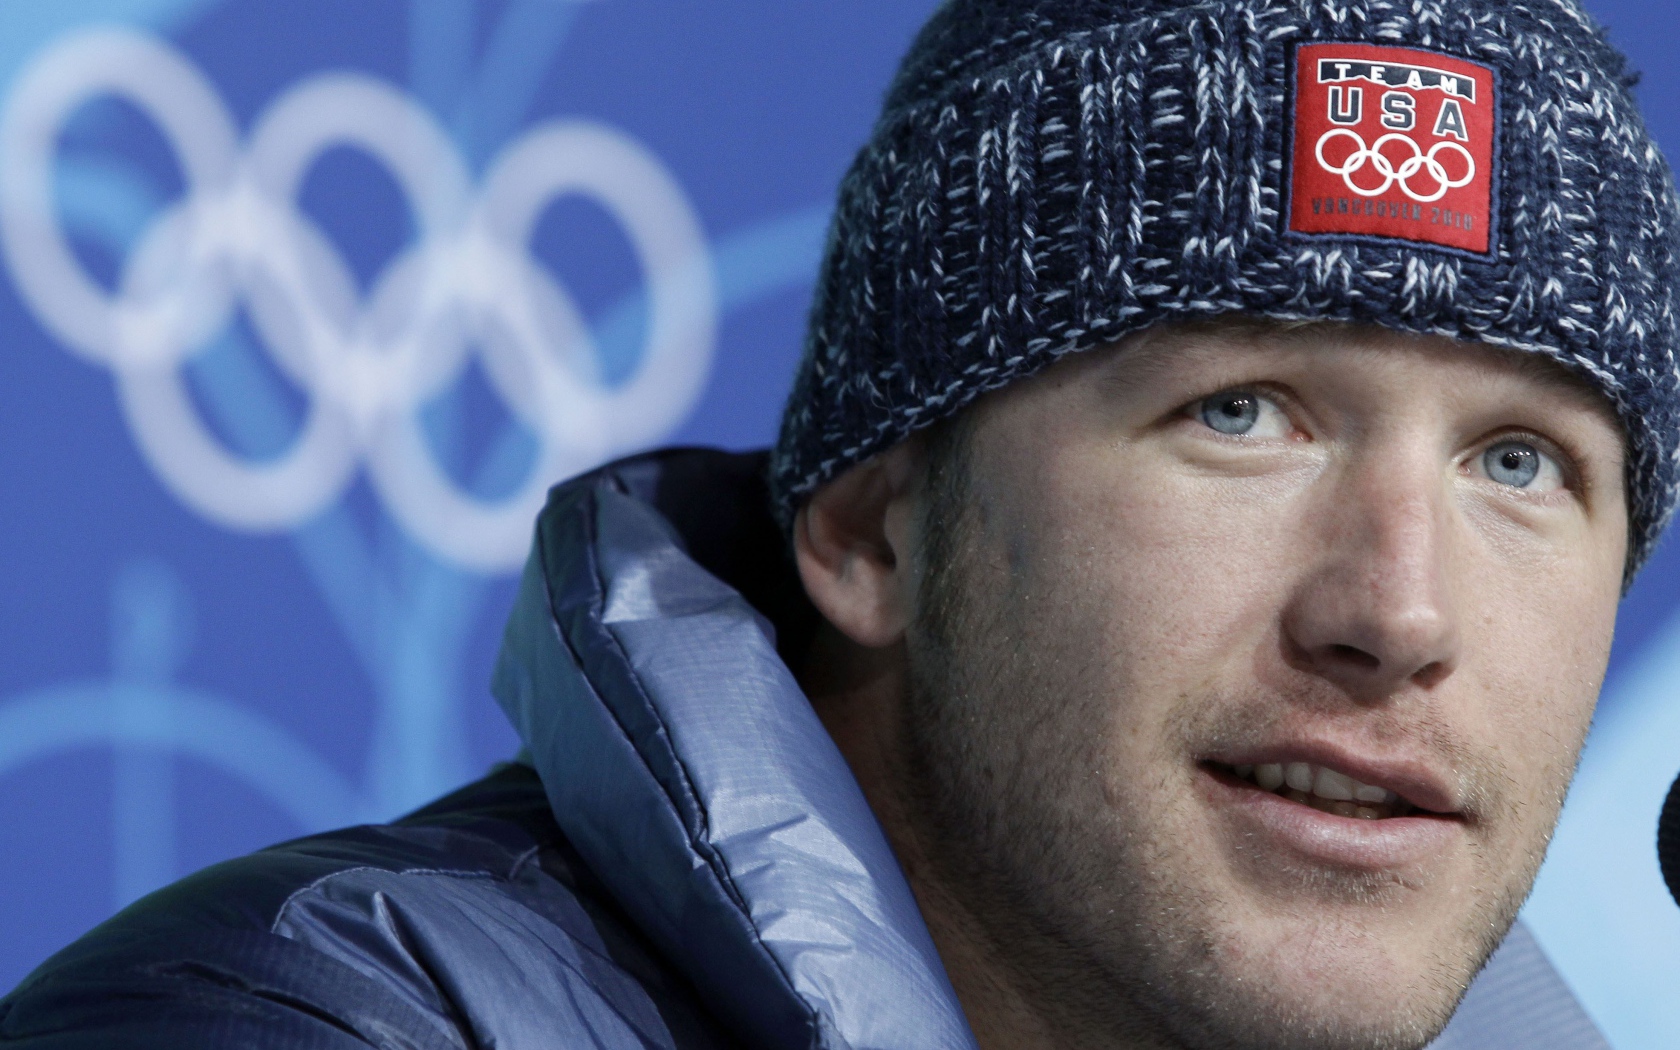 Американский лыжник Боде Миллер на олимпиаде в Сочи